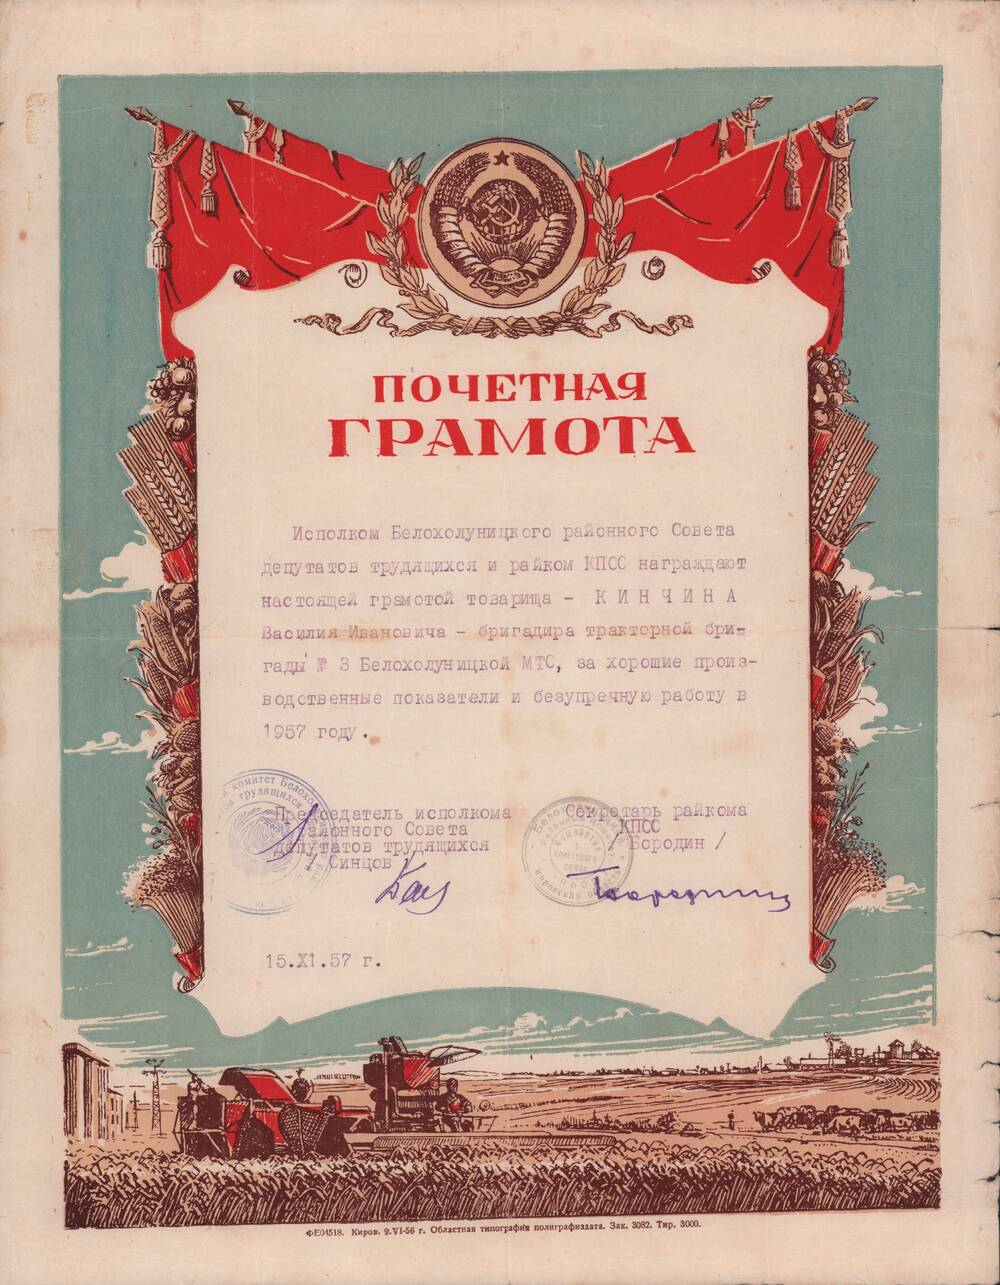 Почётная грамота  1957 года  Кинчина Василия Ивановича.